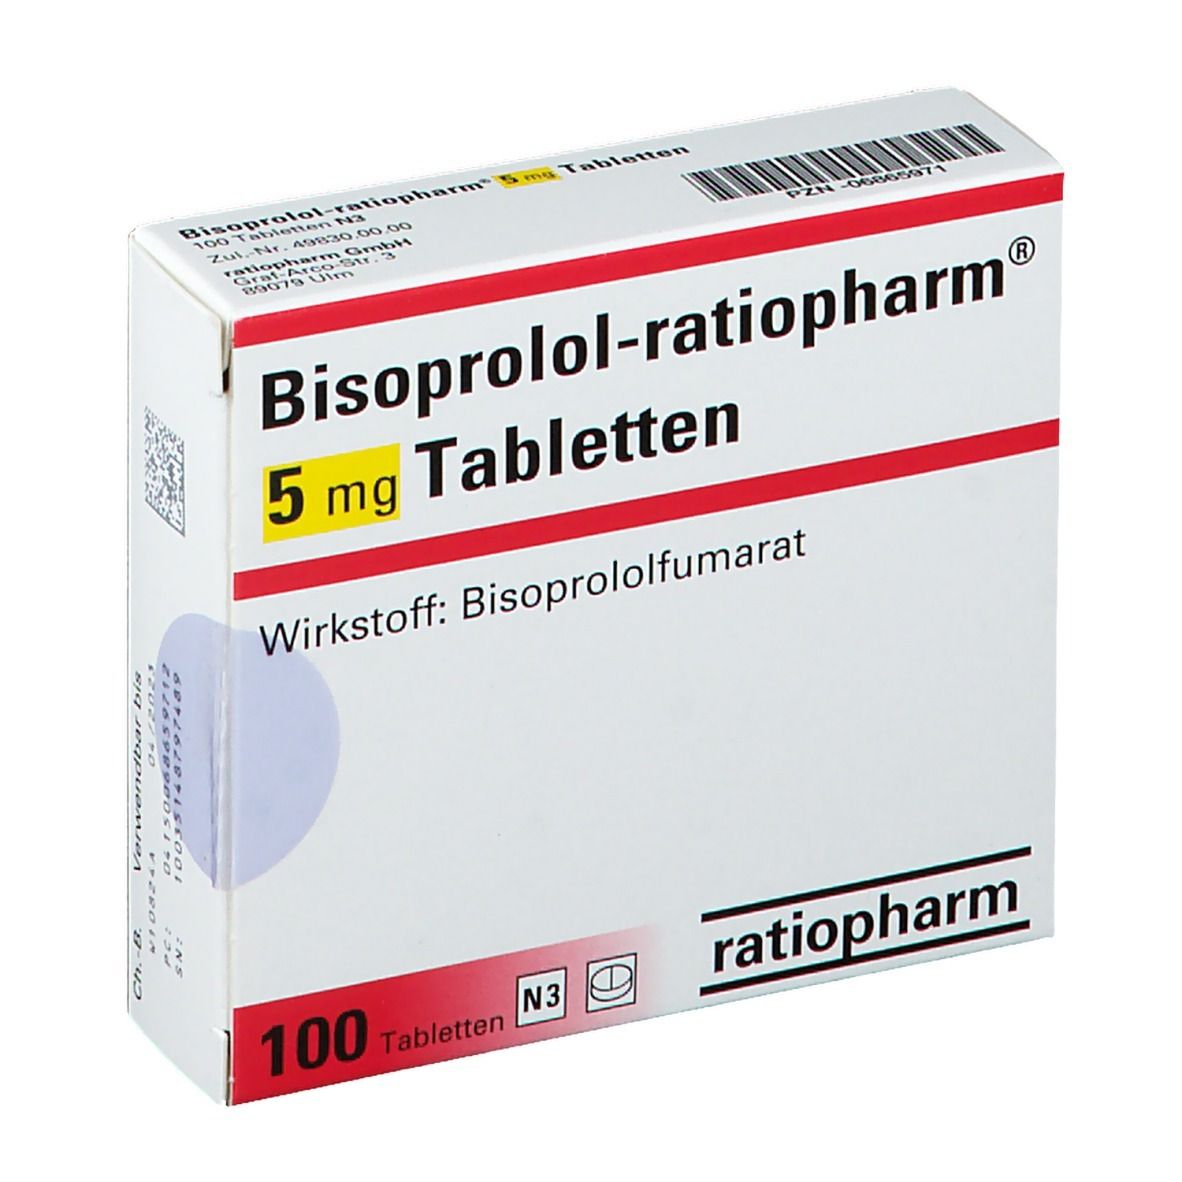 Bisoprolol-ratiopharm® 5 mg